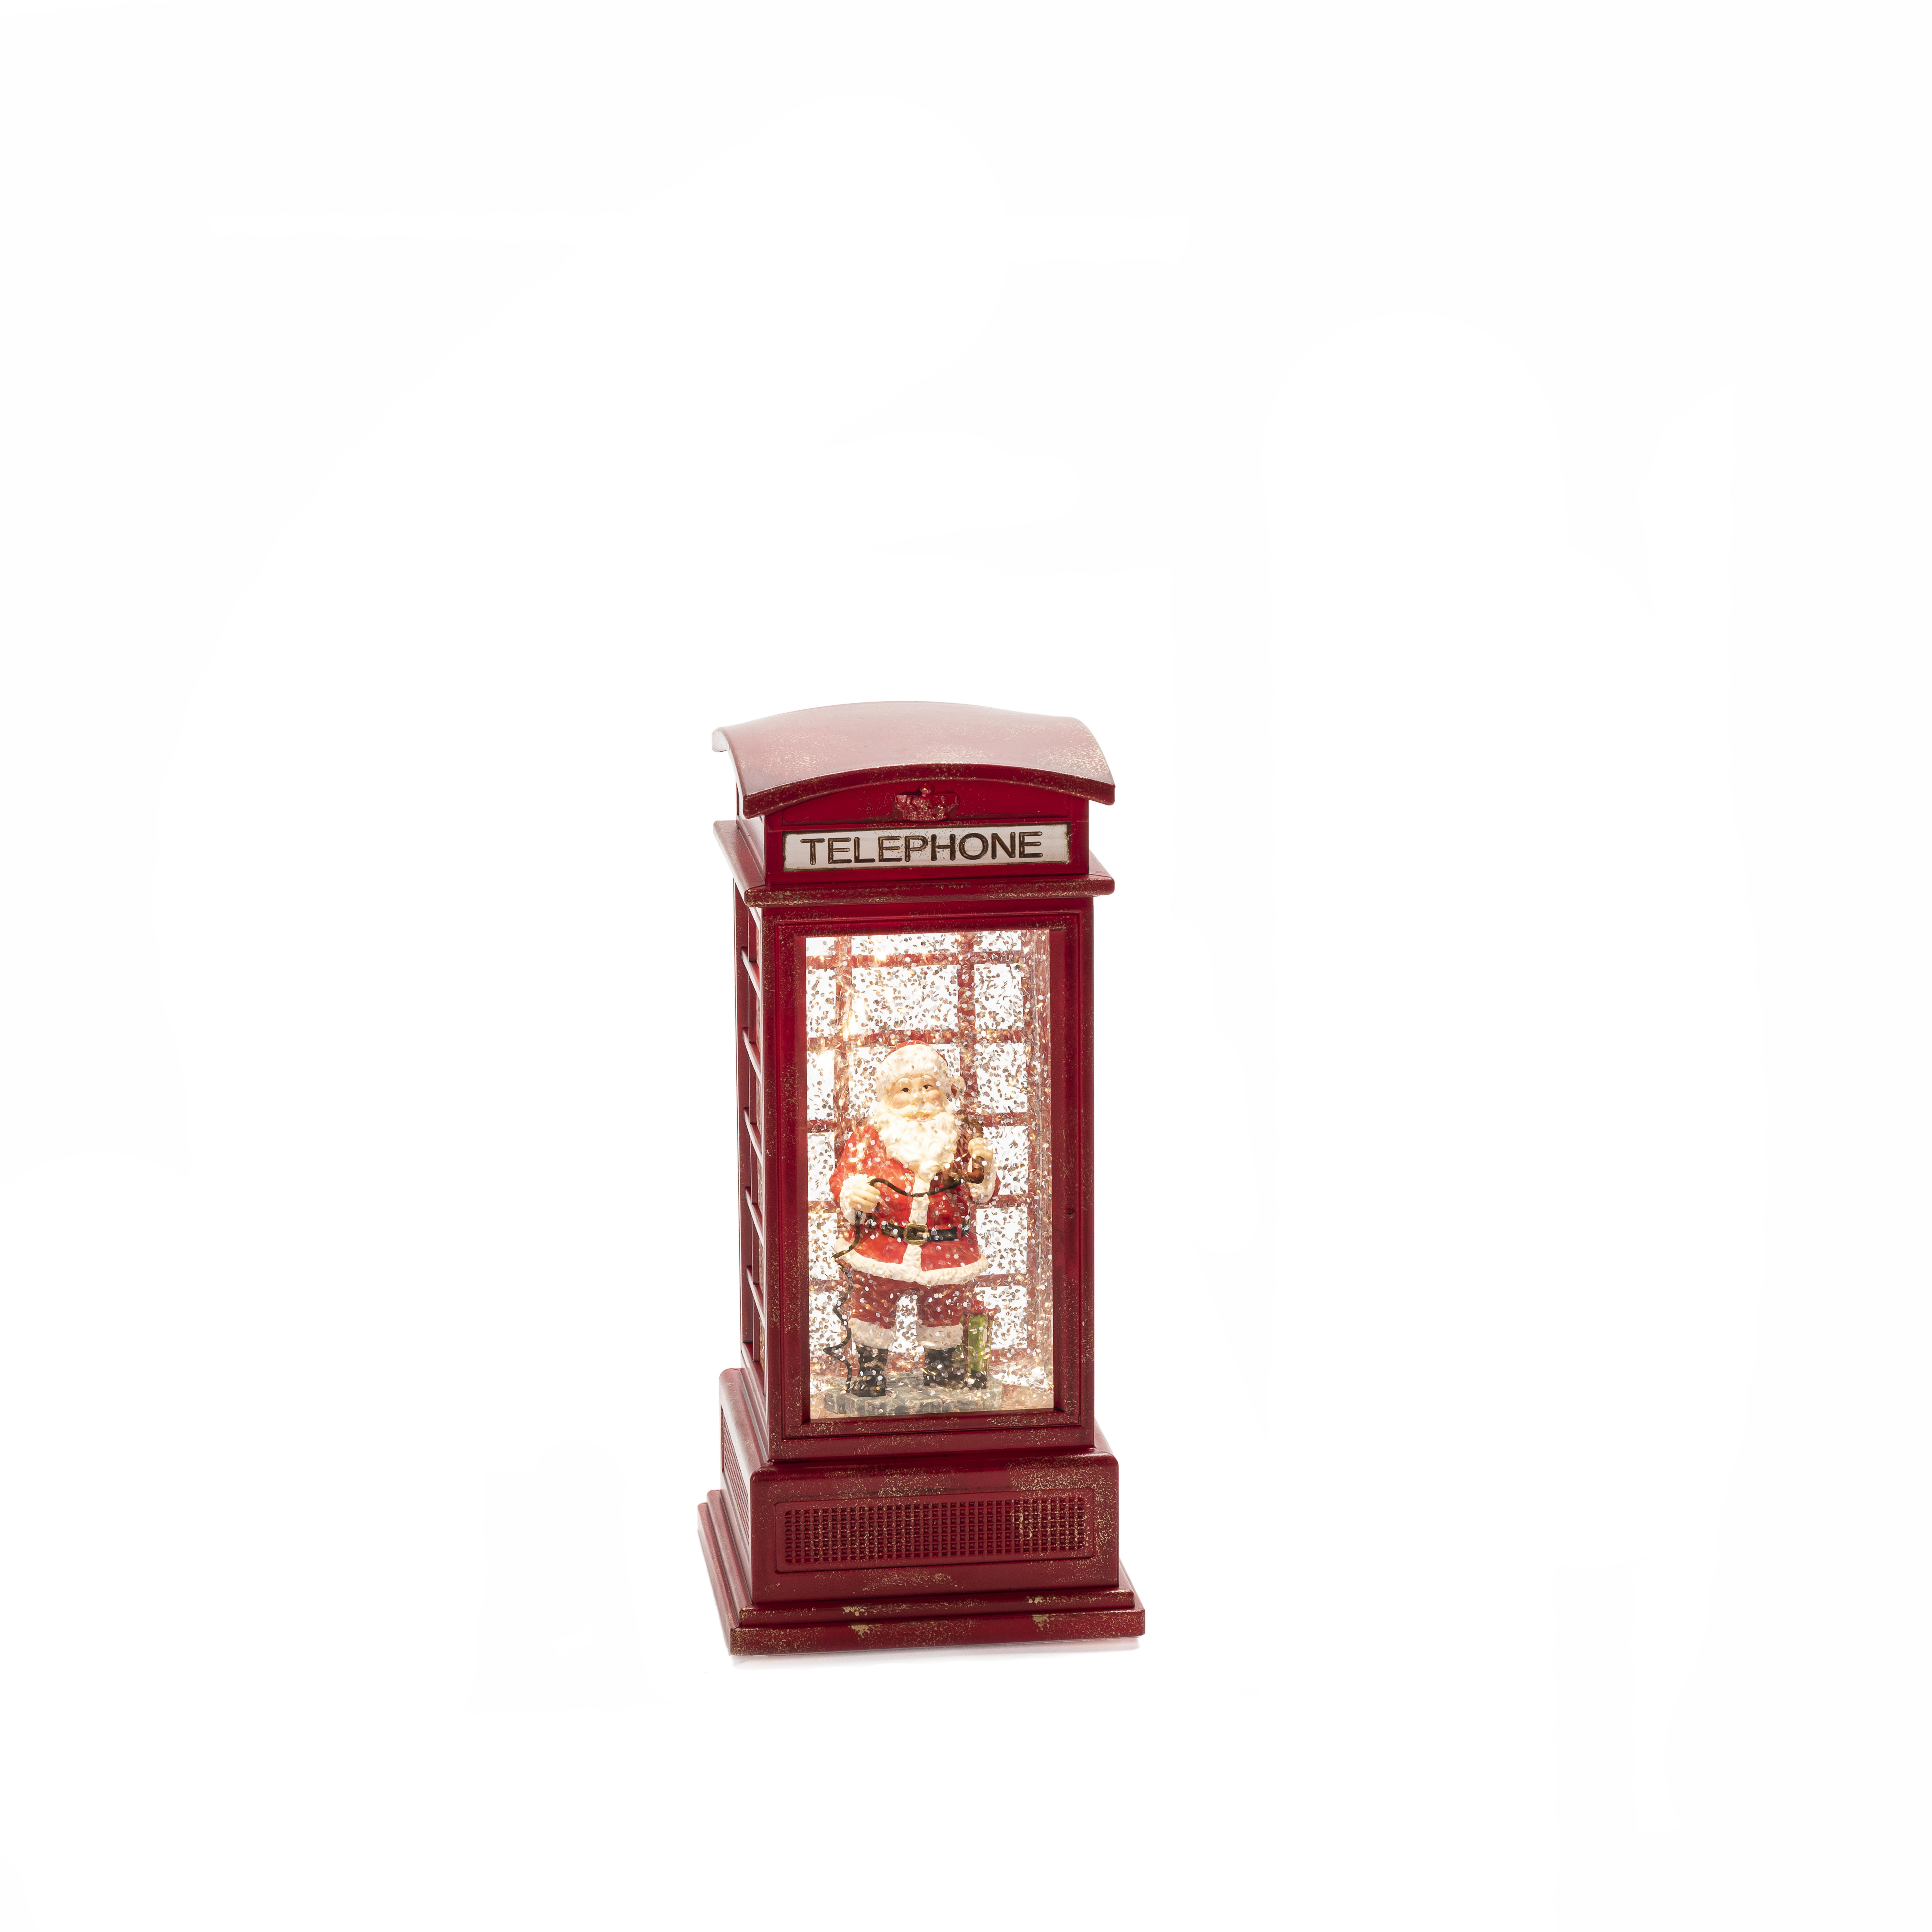 KONSTSMIDE 4388-550 Wasserlaterne, Telefonzelle klein Rot, Weihnachtsbeleuchtung, Weiß Warm